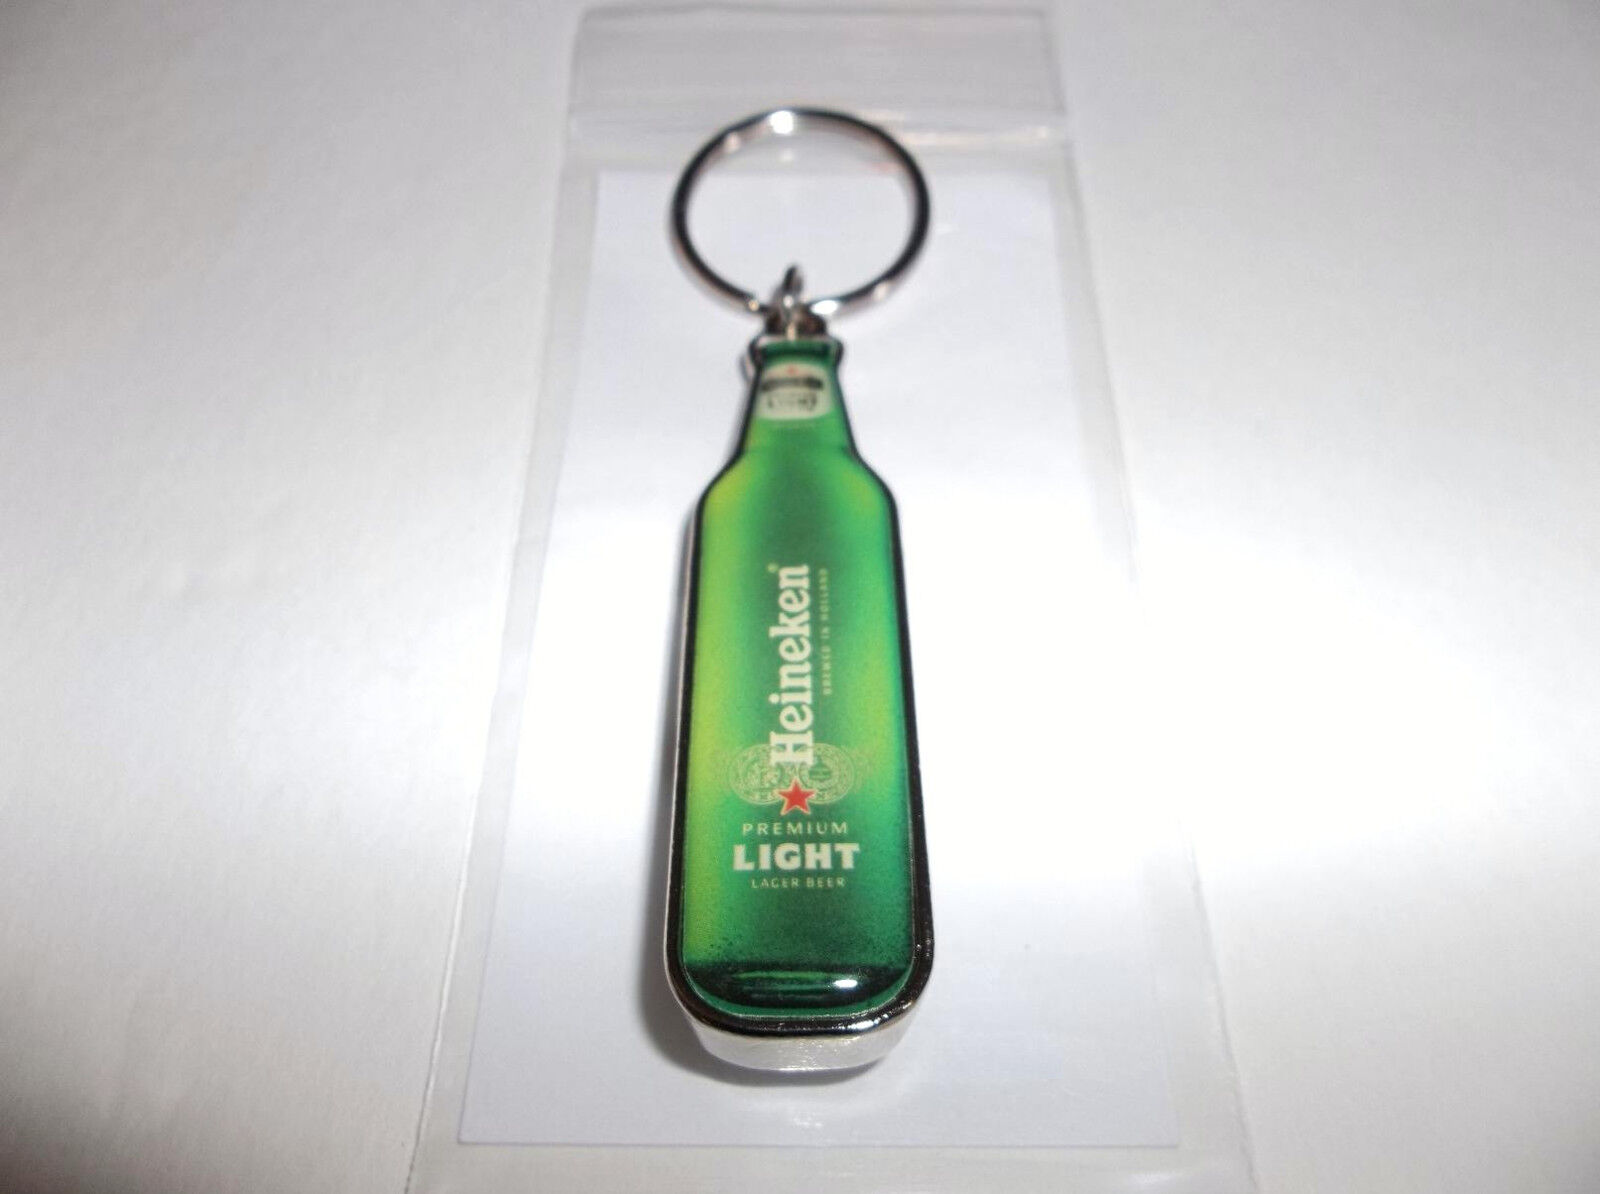 Heineken Light Mini Beer Bottle Cap Opener Keychain-Keyring Great Party  Gift New | eBay